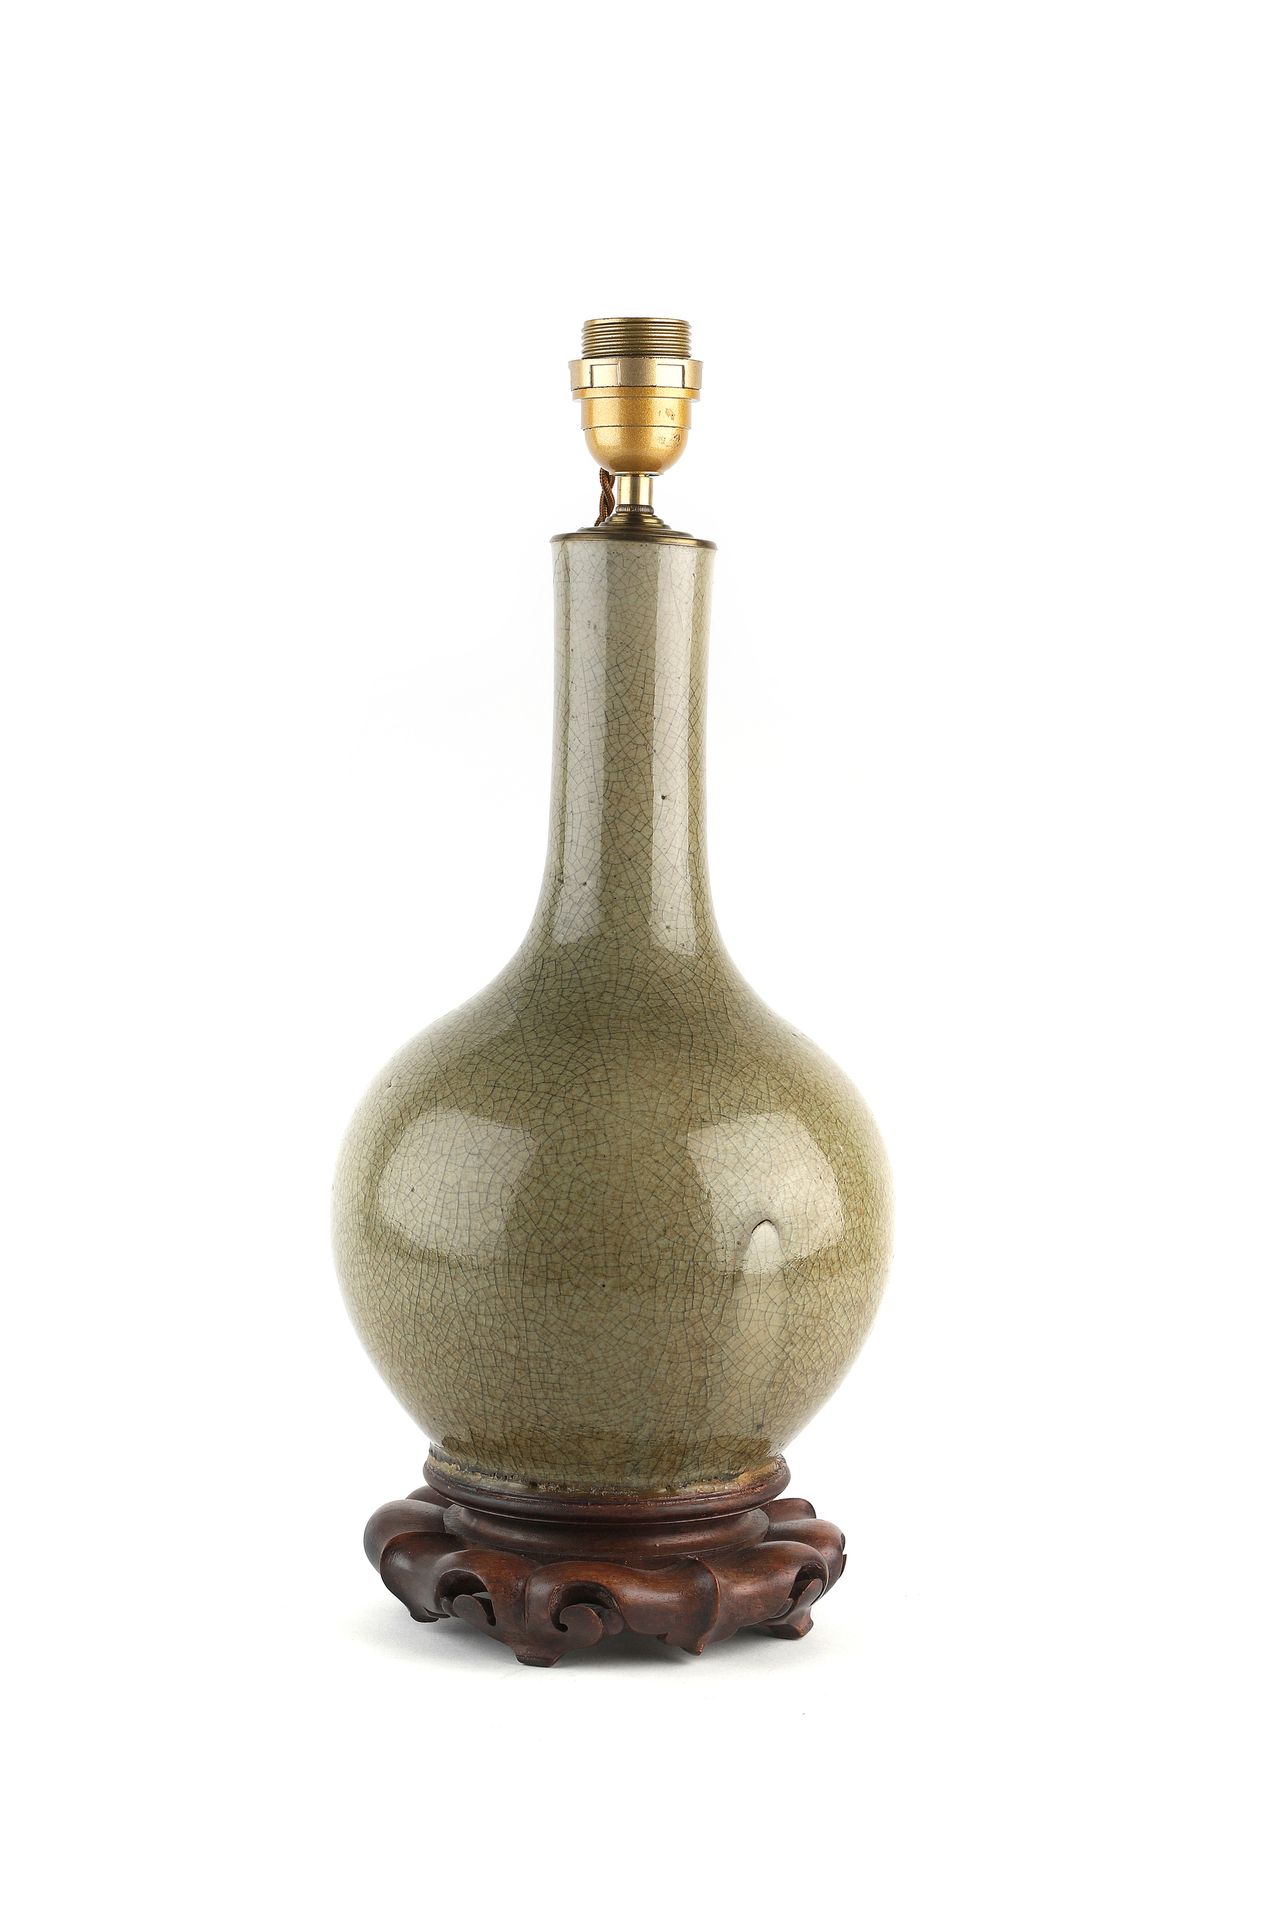 Null 中国，19世纪

釉面开裂的瓷瓶，装作灯。 

高度：34厘米（花瓶） 颈部有裂痕